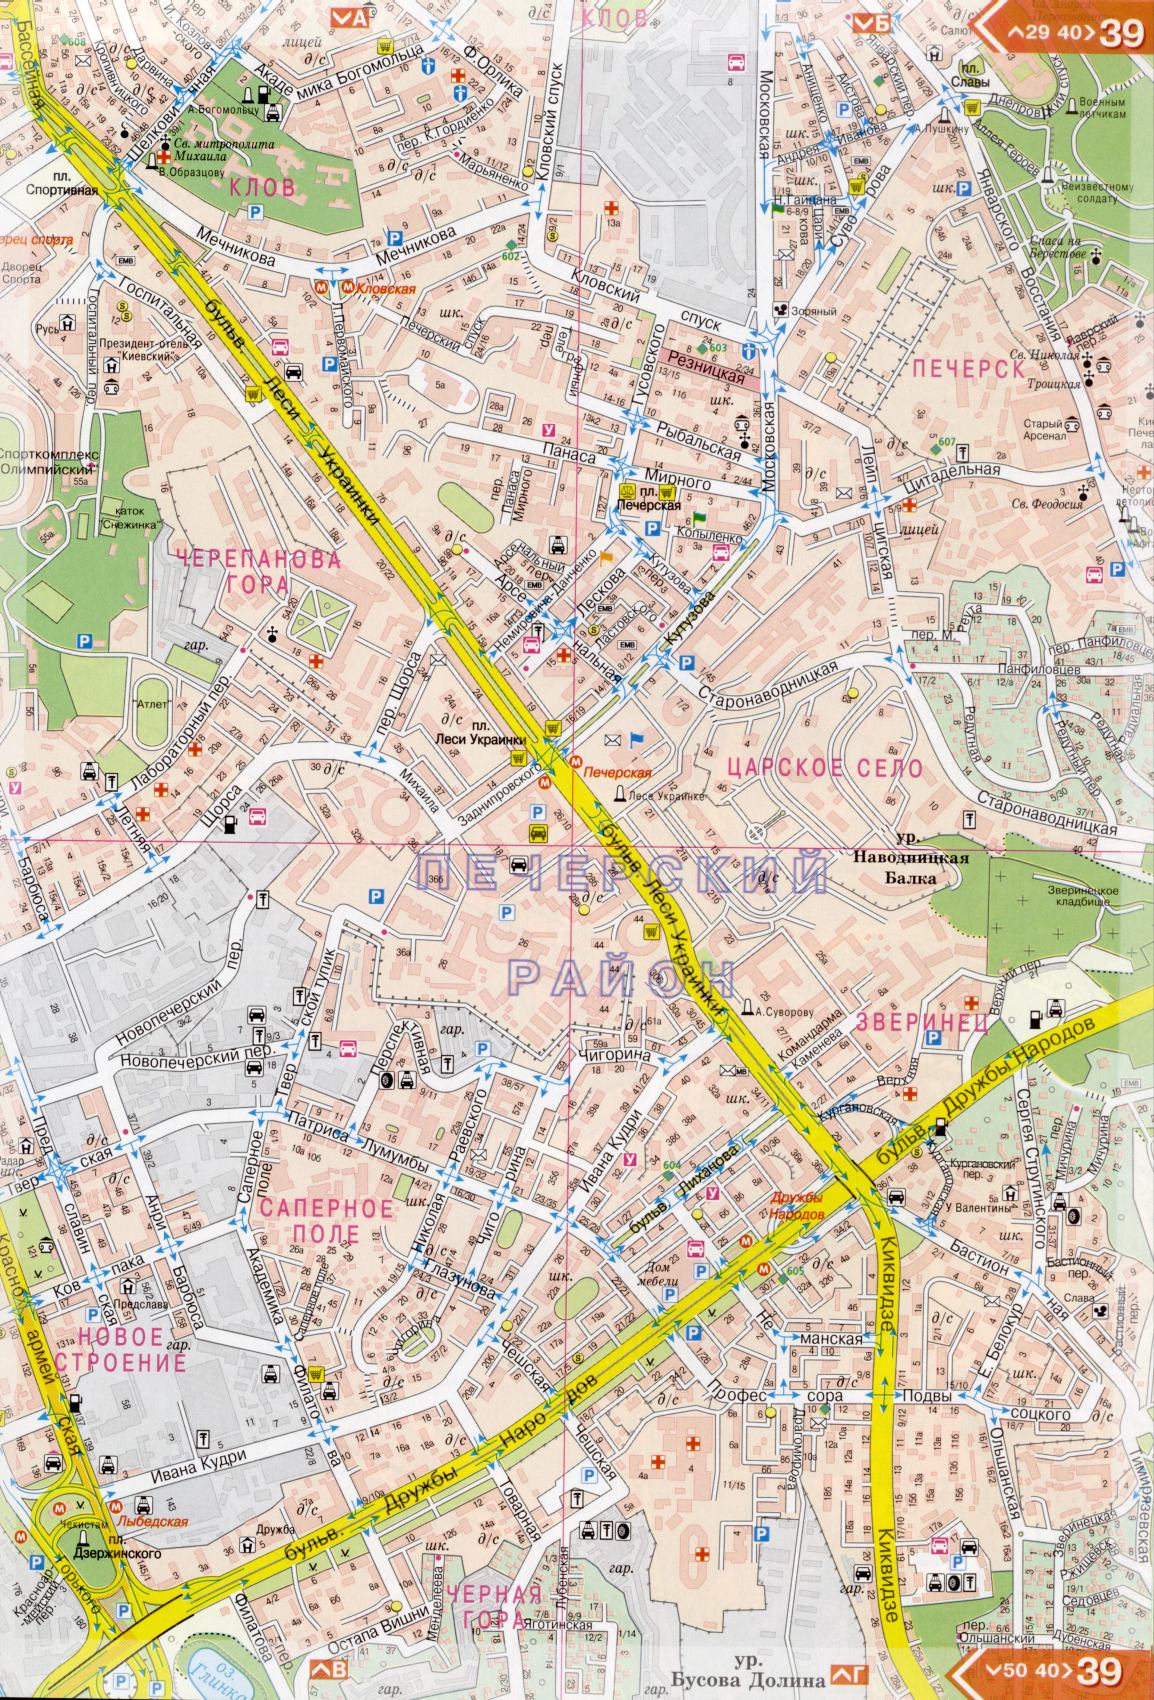 Kiew Karte Details 1cm = 150m für 45 Blatt. Karte von Kiew aus dem Atlas von Autobahnen. Laden Sie eine detaillierte Karte, F3